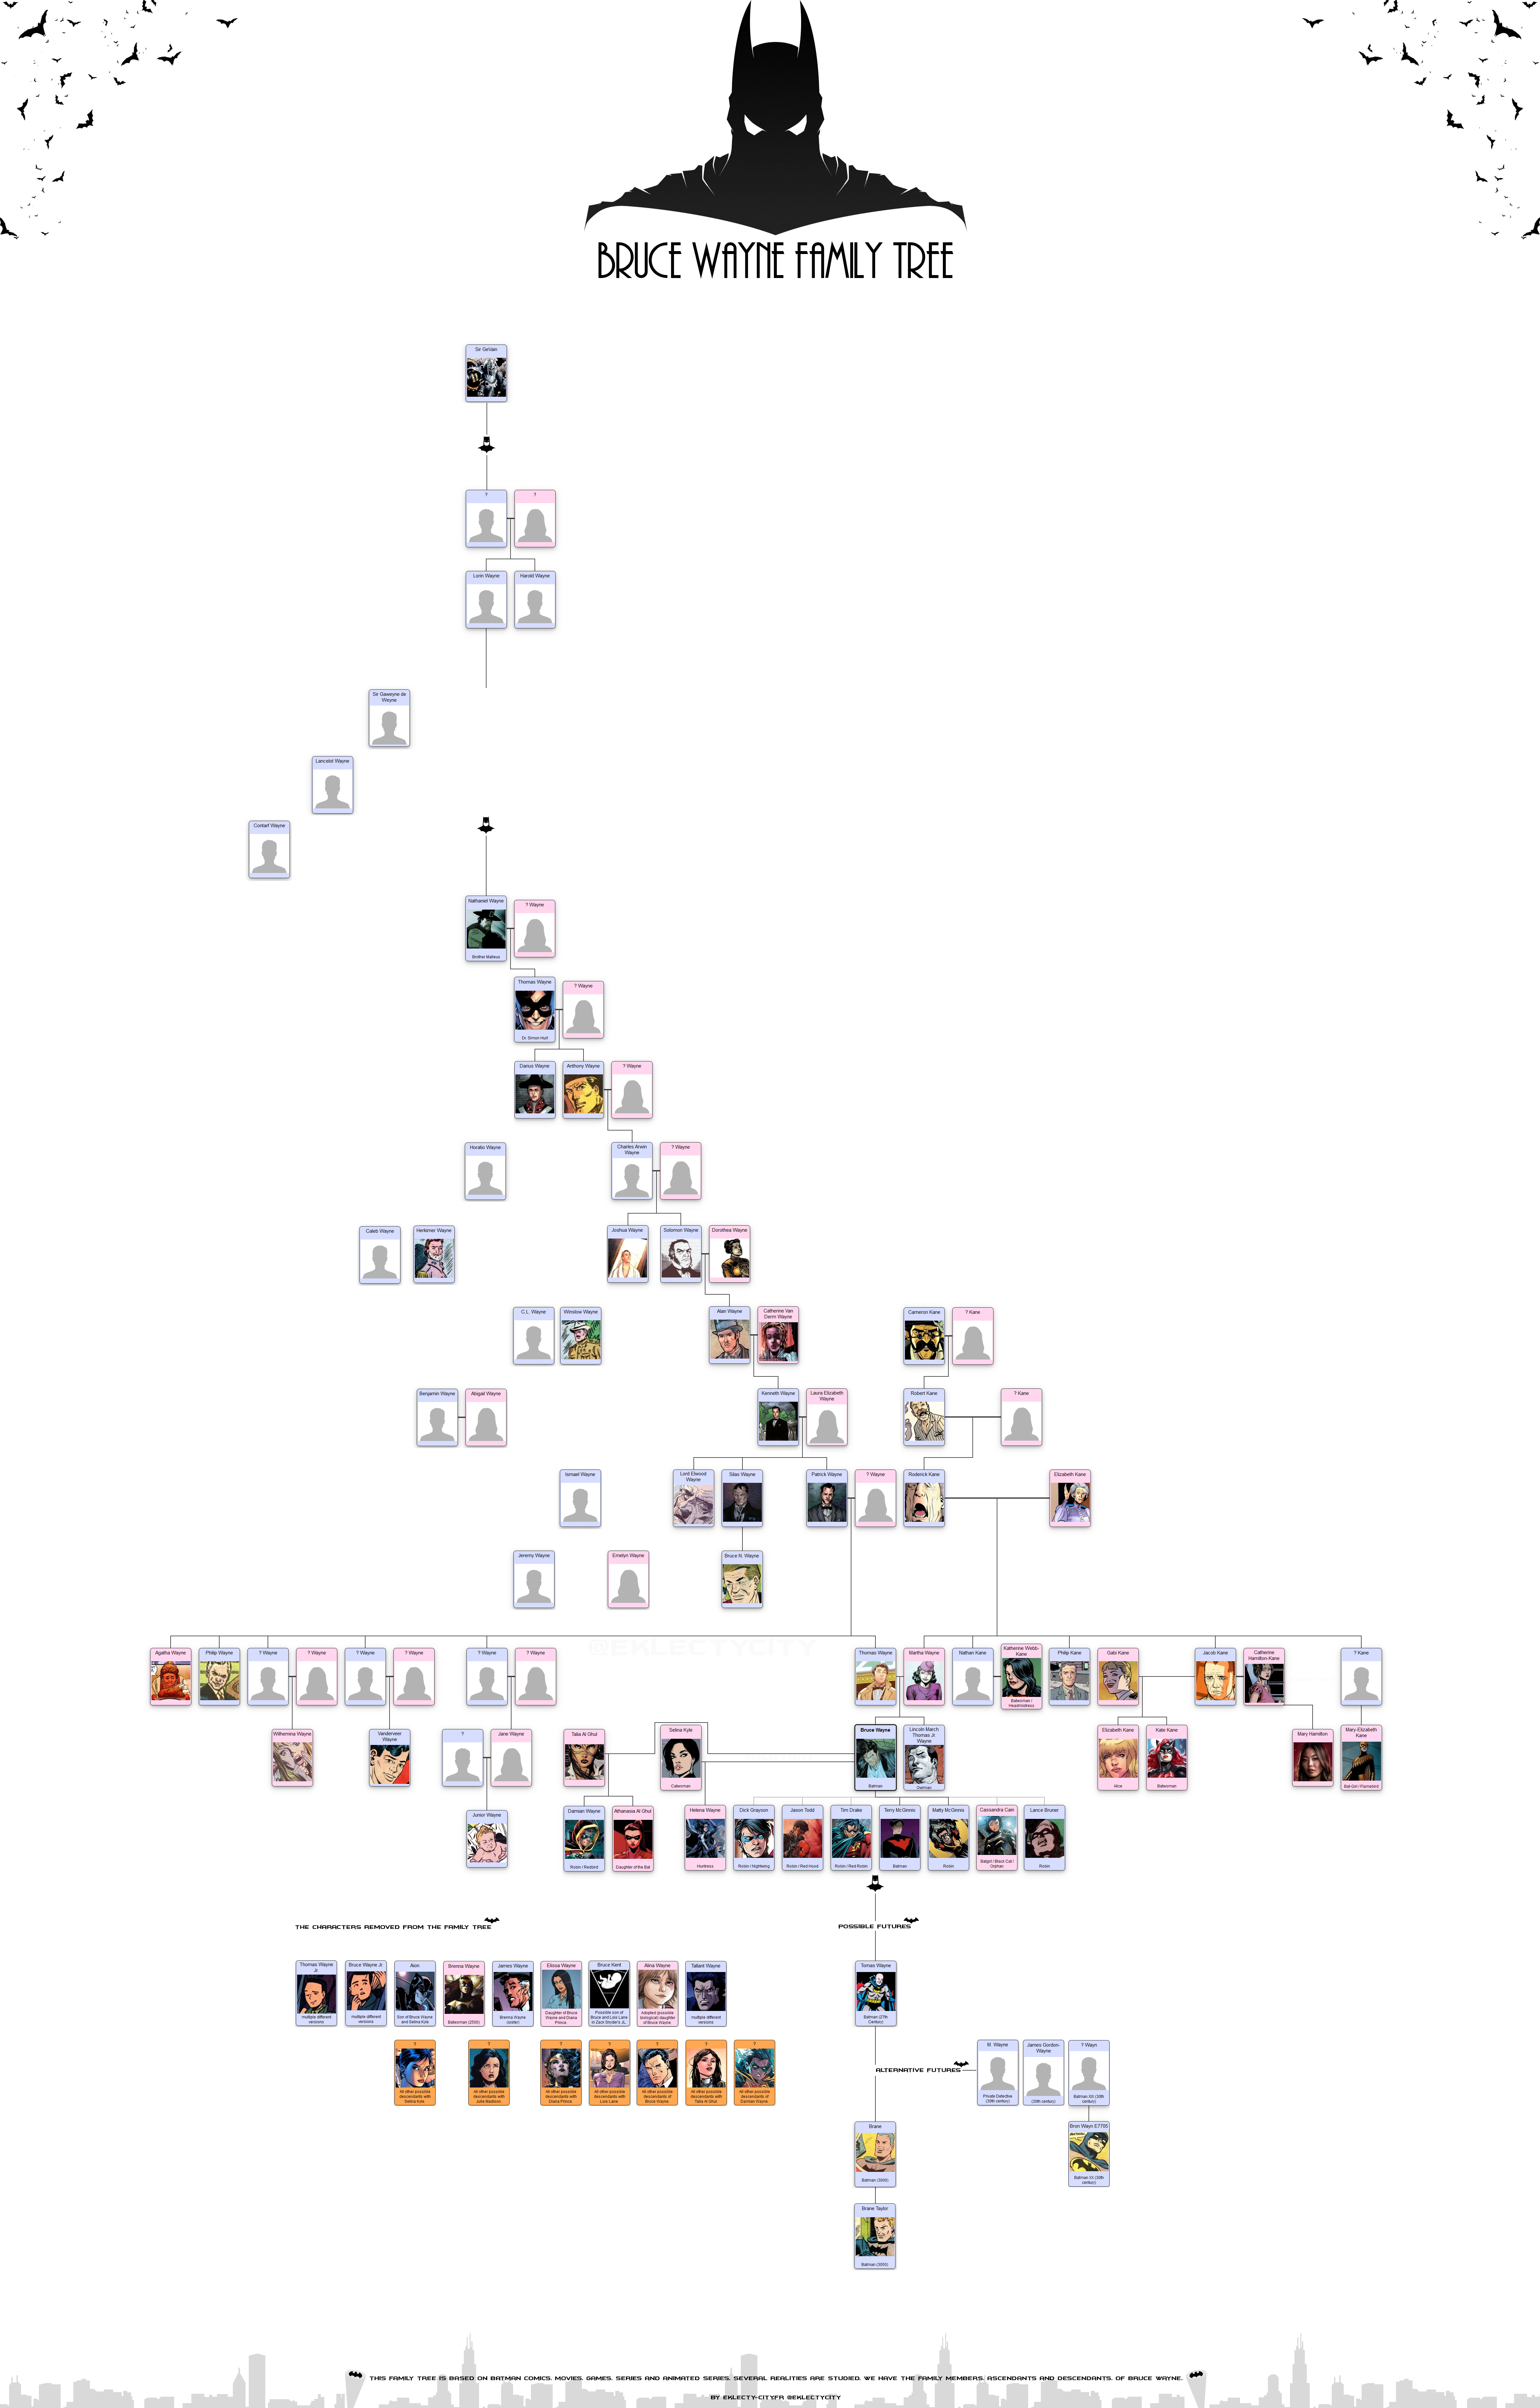 infographie-arbre-genealogique-bruce-wayne-batman-eklecty-city  